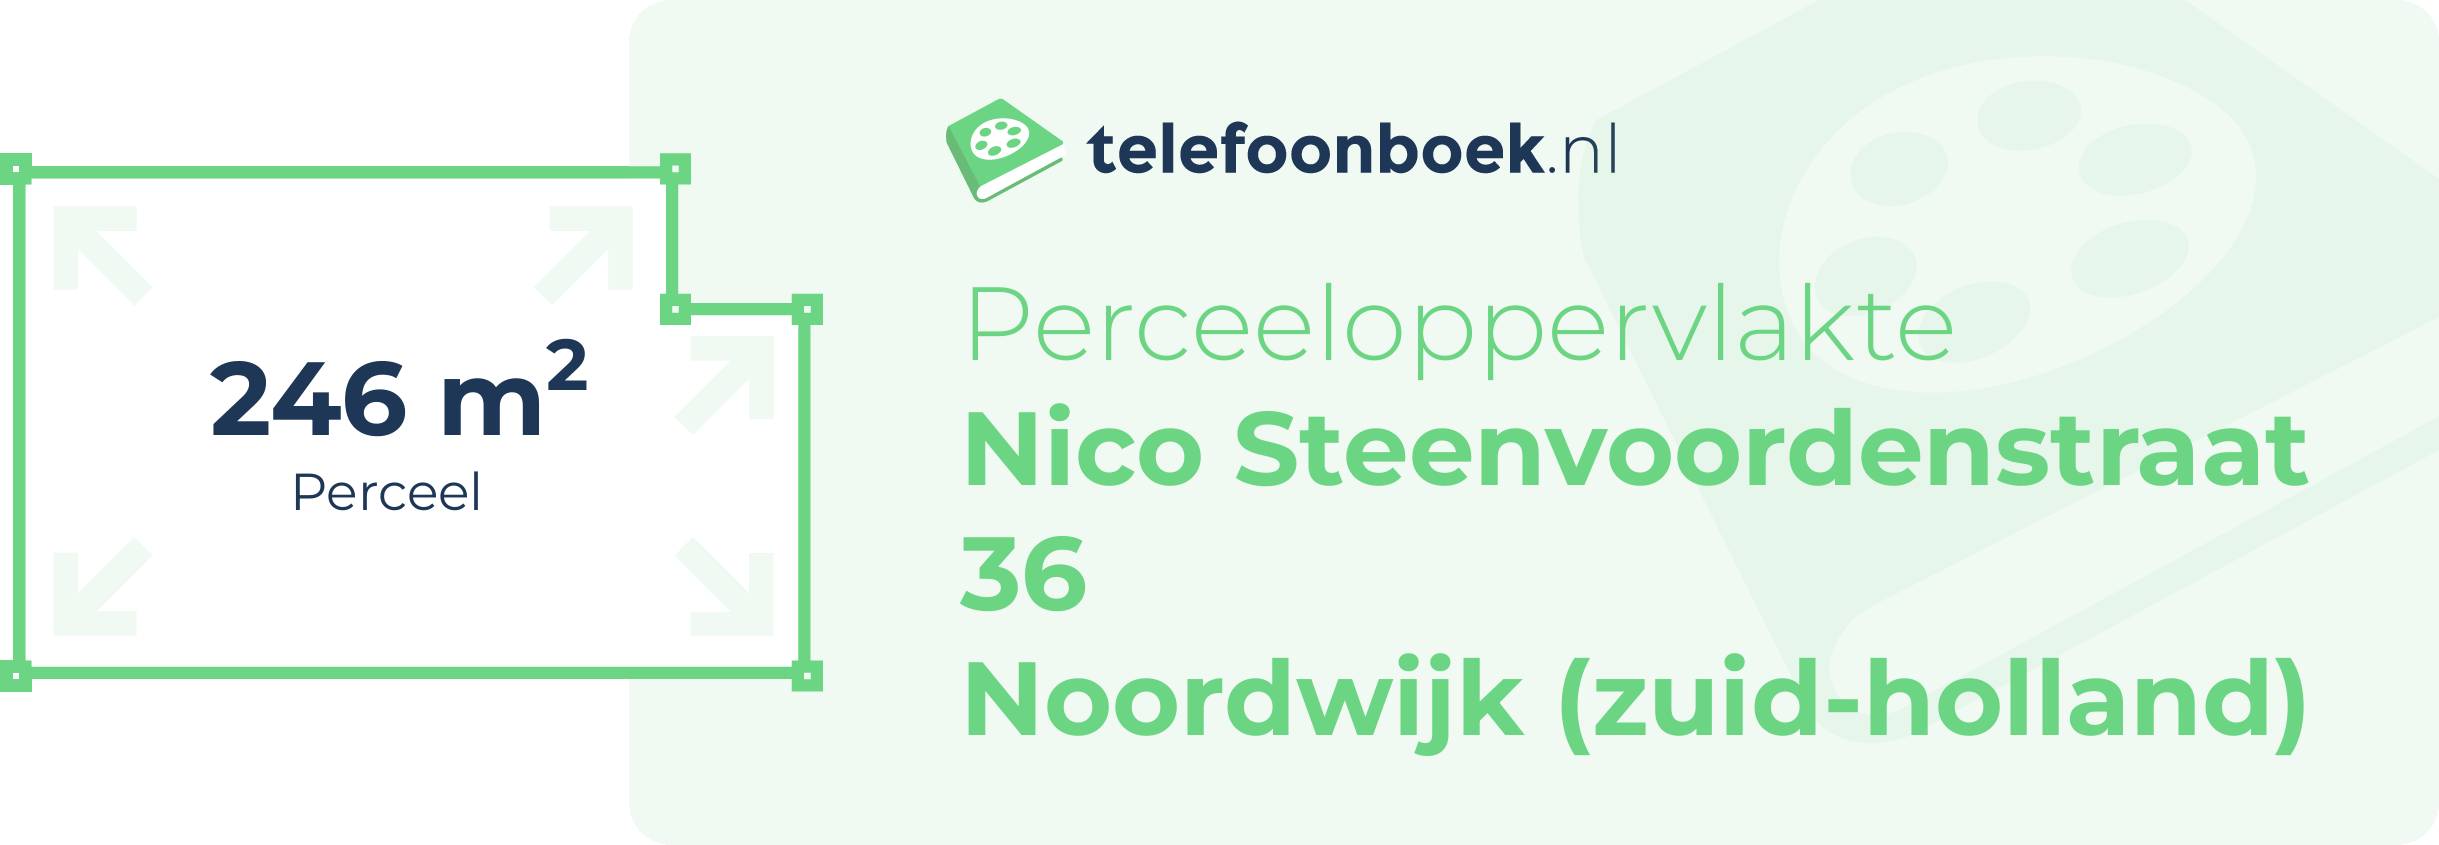 Perceeloppervlakte Nico Steenvoordenstraat 36 Noordwijk (Zuid-Holland)